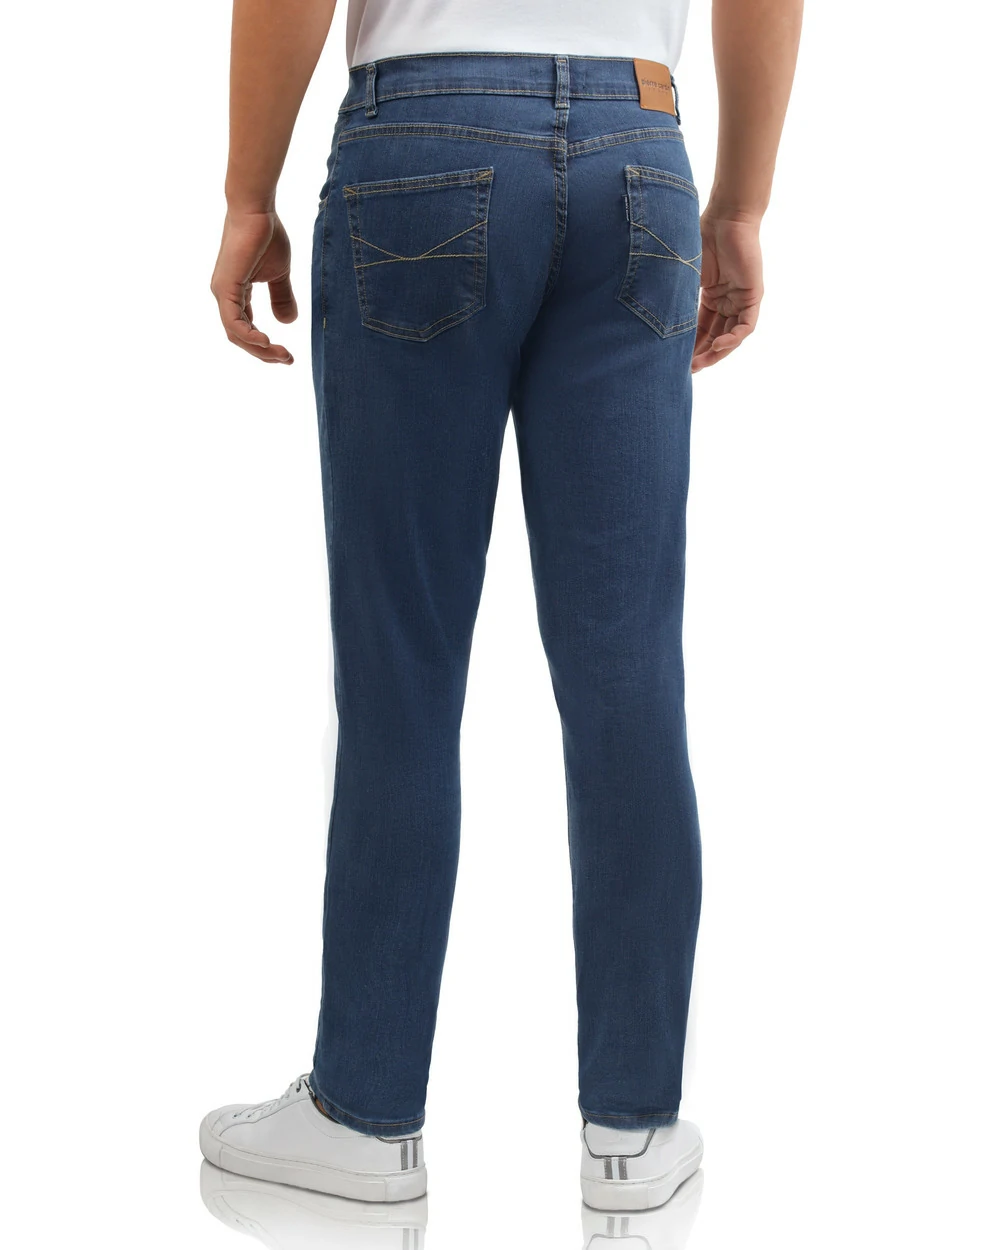 Jeans 721 skinny celeste